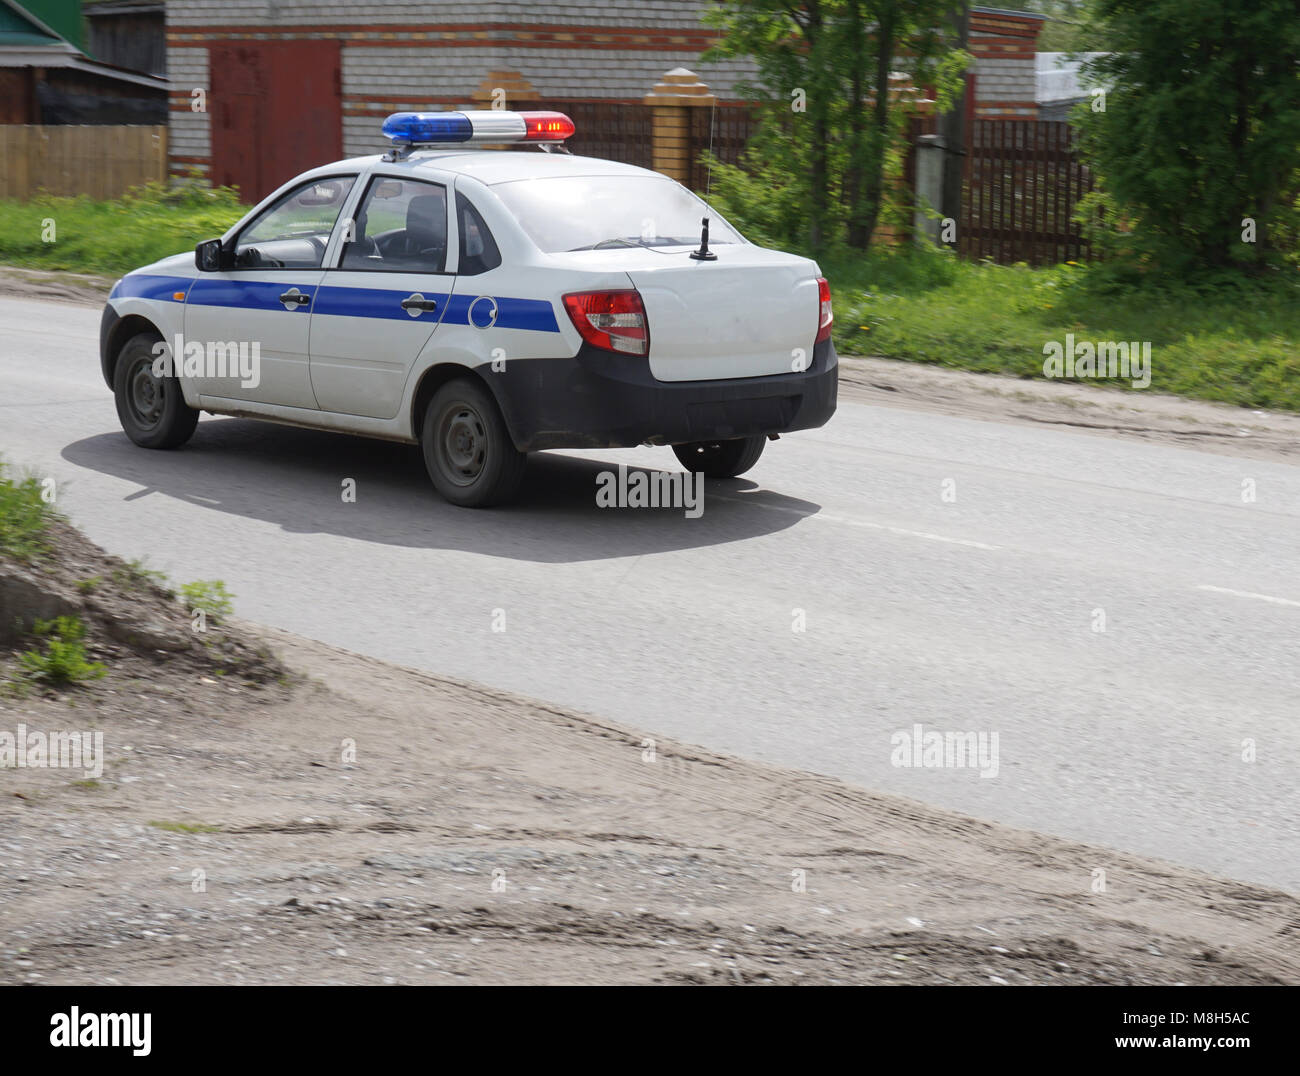 https://c8.alamy.com/compde/m8h5ac/die-russische-polizei-auto-mit-blaulicht-m8h5ac.jpg